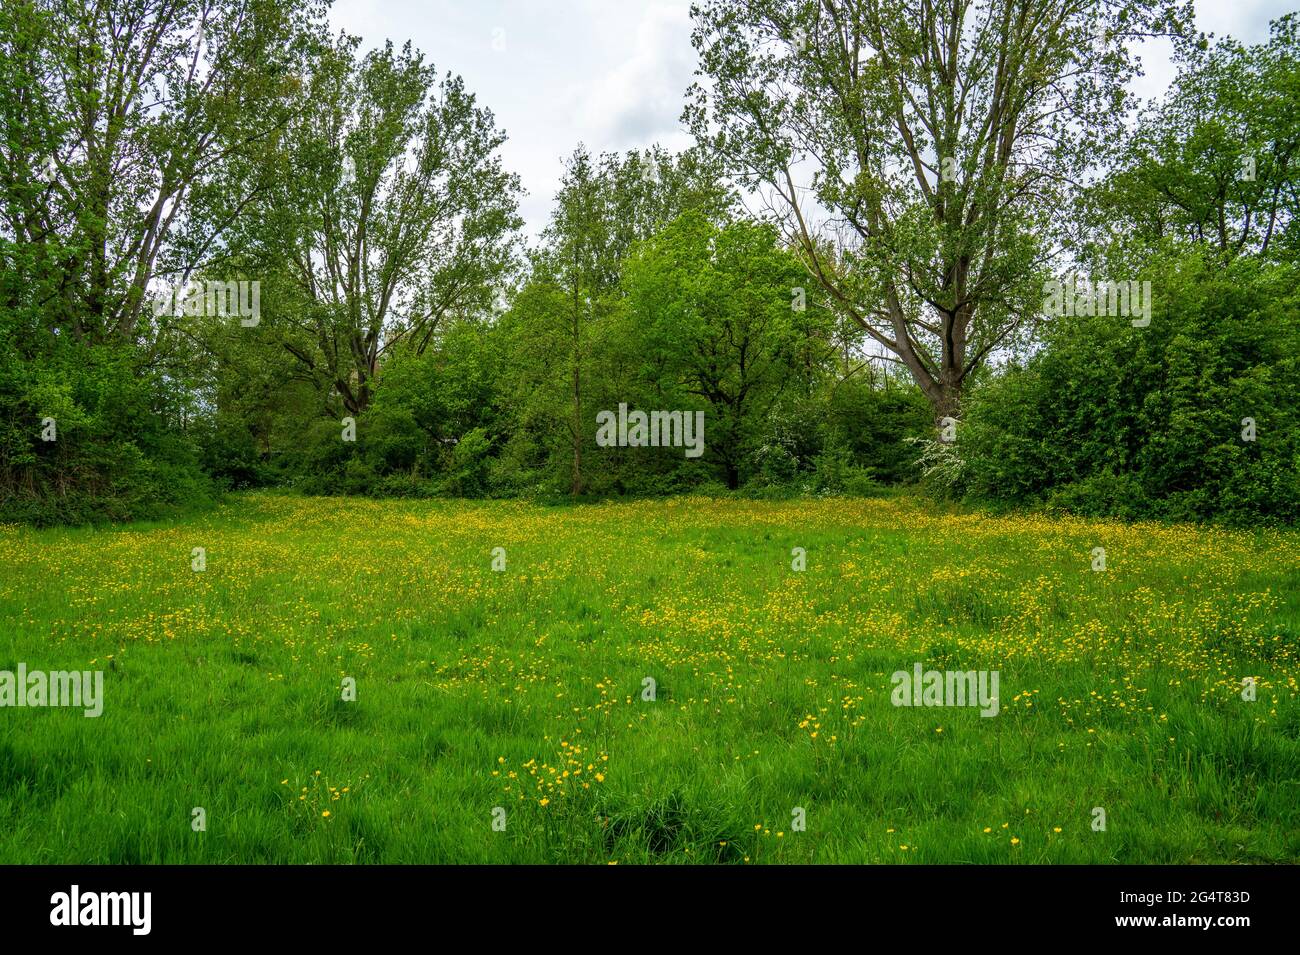 Vue dans le parc avec prairie avec butterbutterbutterbups (Ranunculus) Banque D'Images